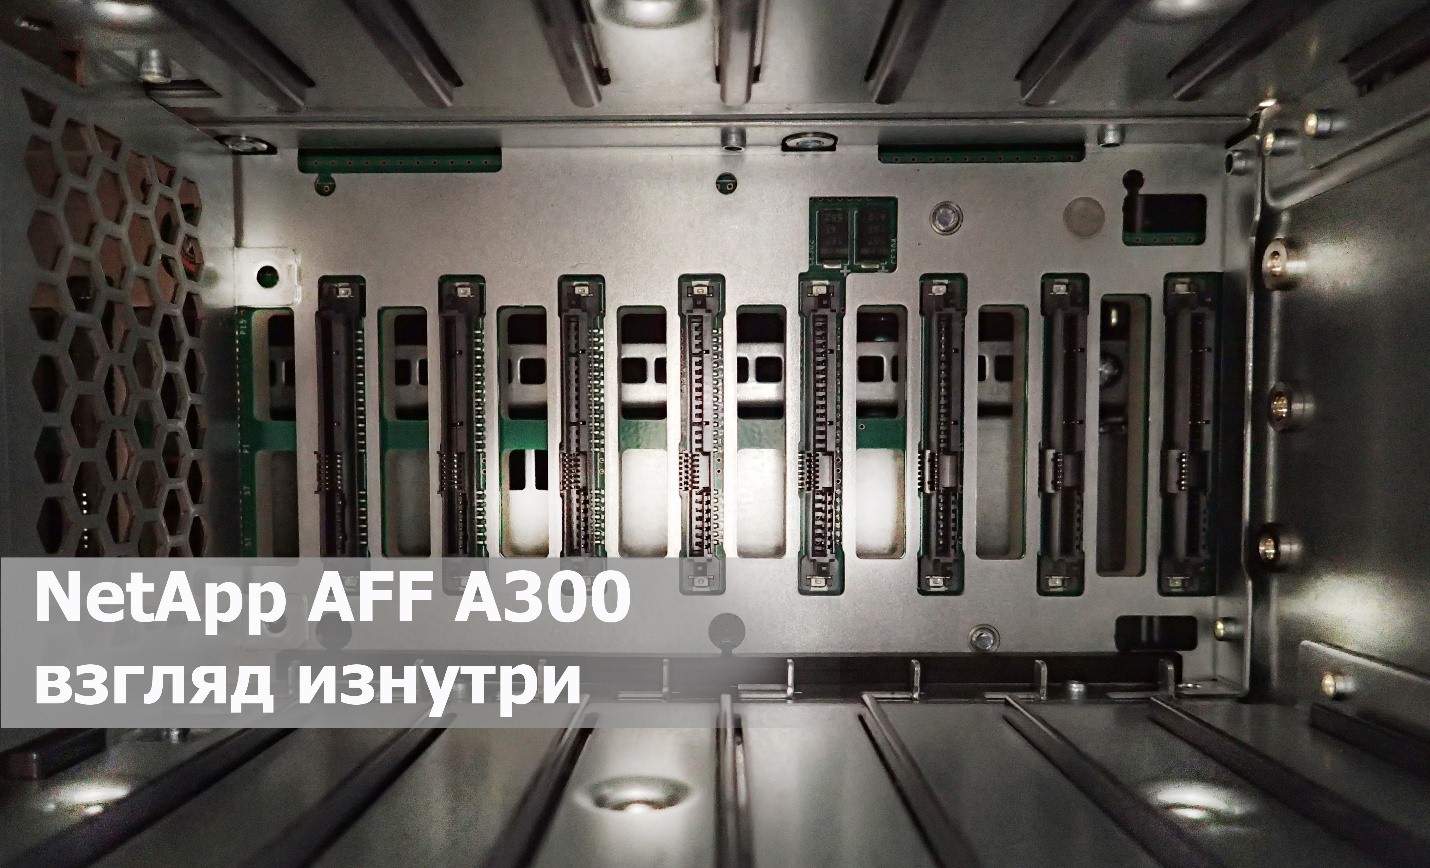 Unboxing all-flash СХД NetApp AFF A300: технические характеристики и взгляд изнутри